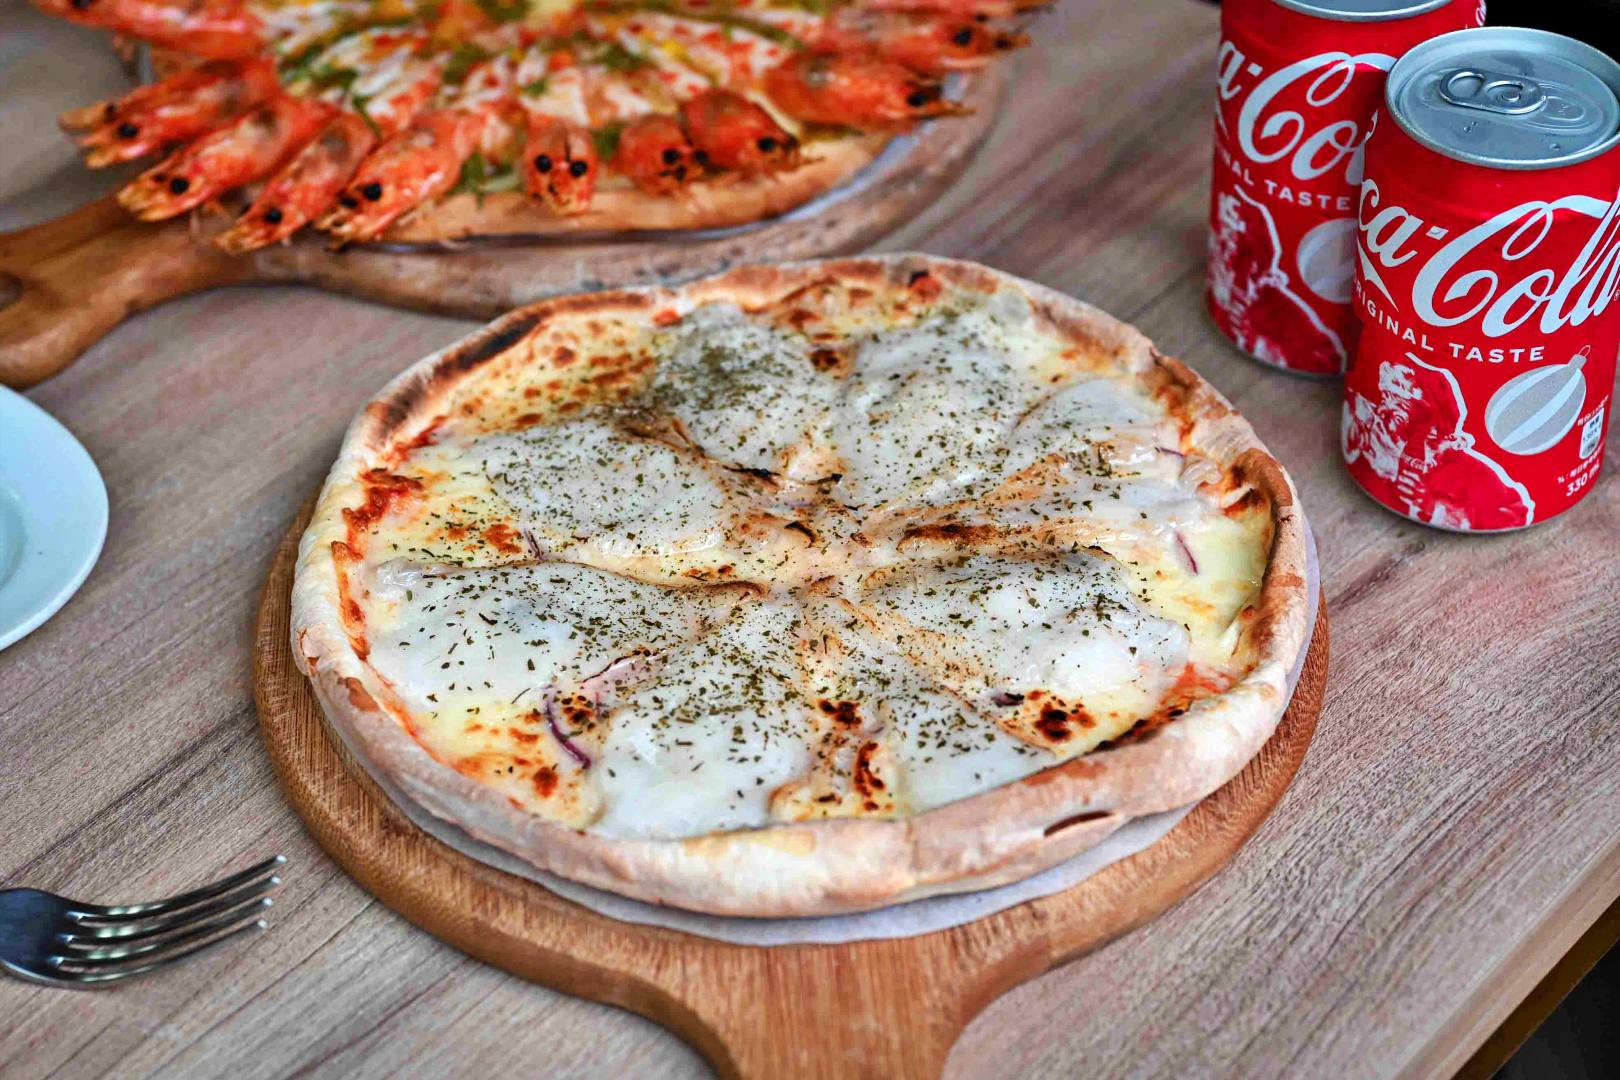 愛披薩ipizza, 愛披薩, 愛披薩菜單, 愛披薩推薦, 士林美食